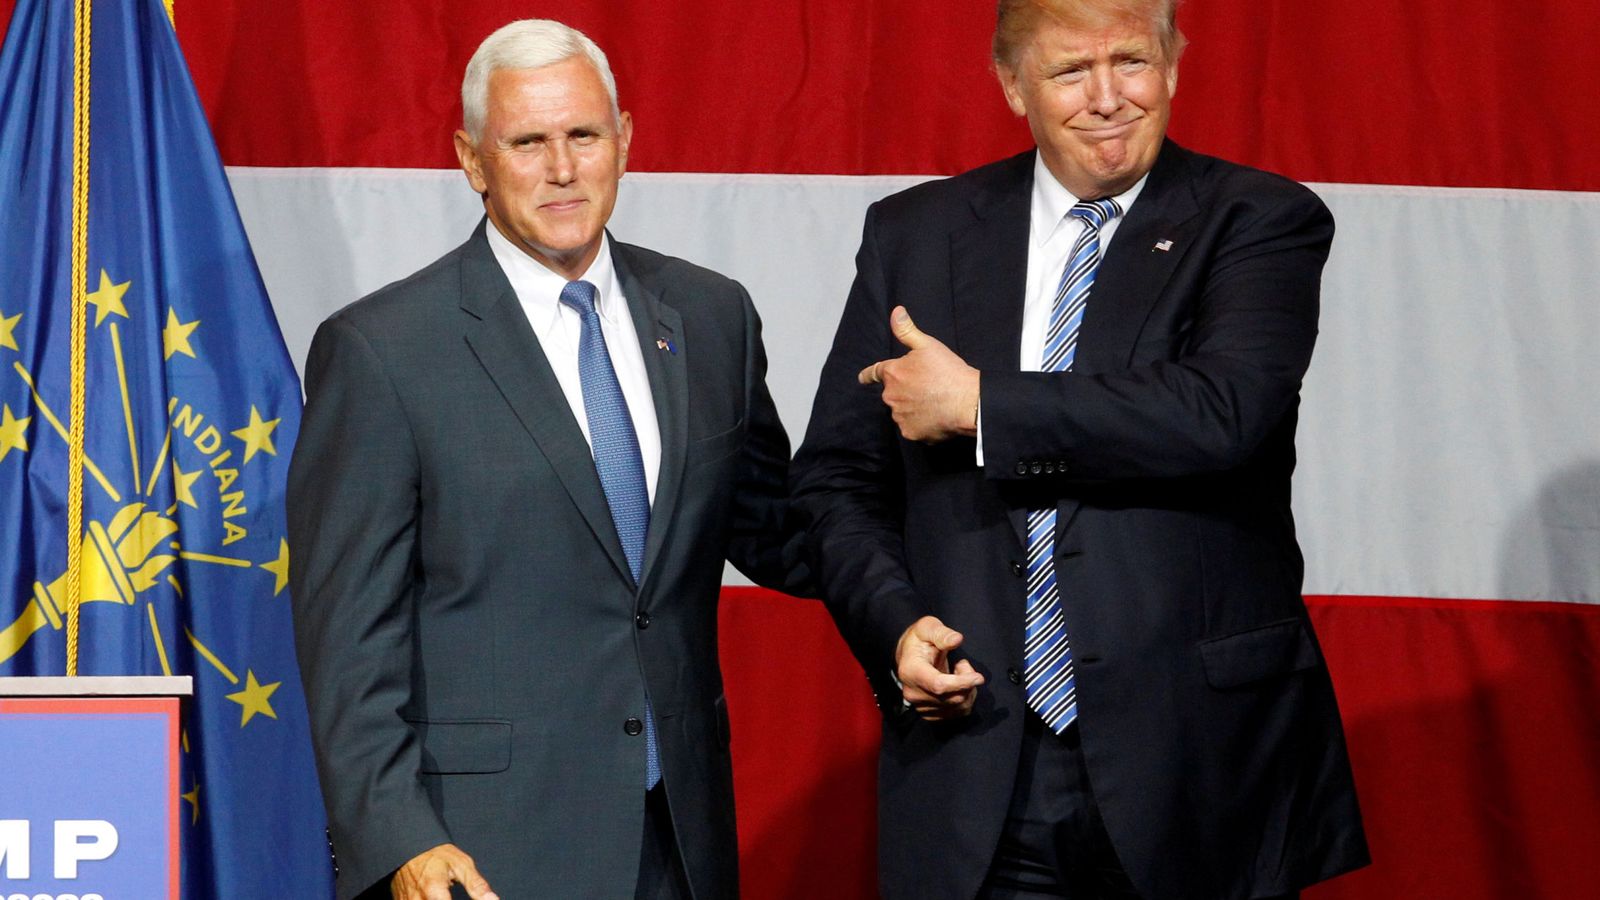 Foto: Donald Trump señala a Mike Pence durante un acto de campaña en Westfield, Indiana, el 12 de julio de 2016 )Reuters)